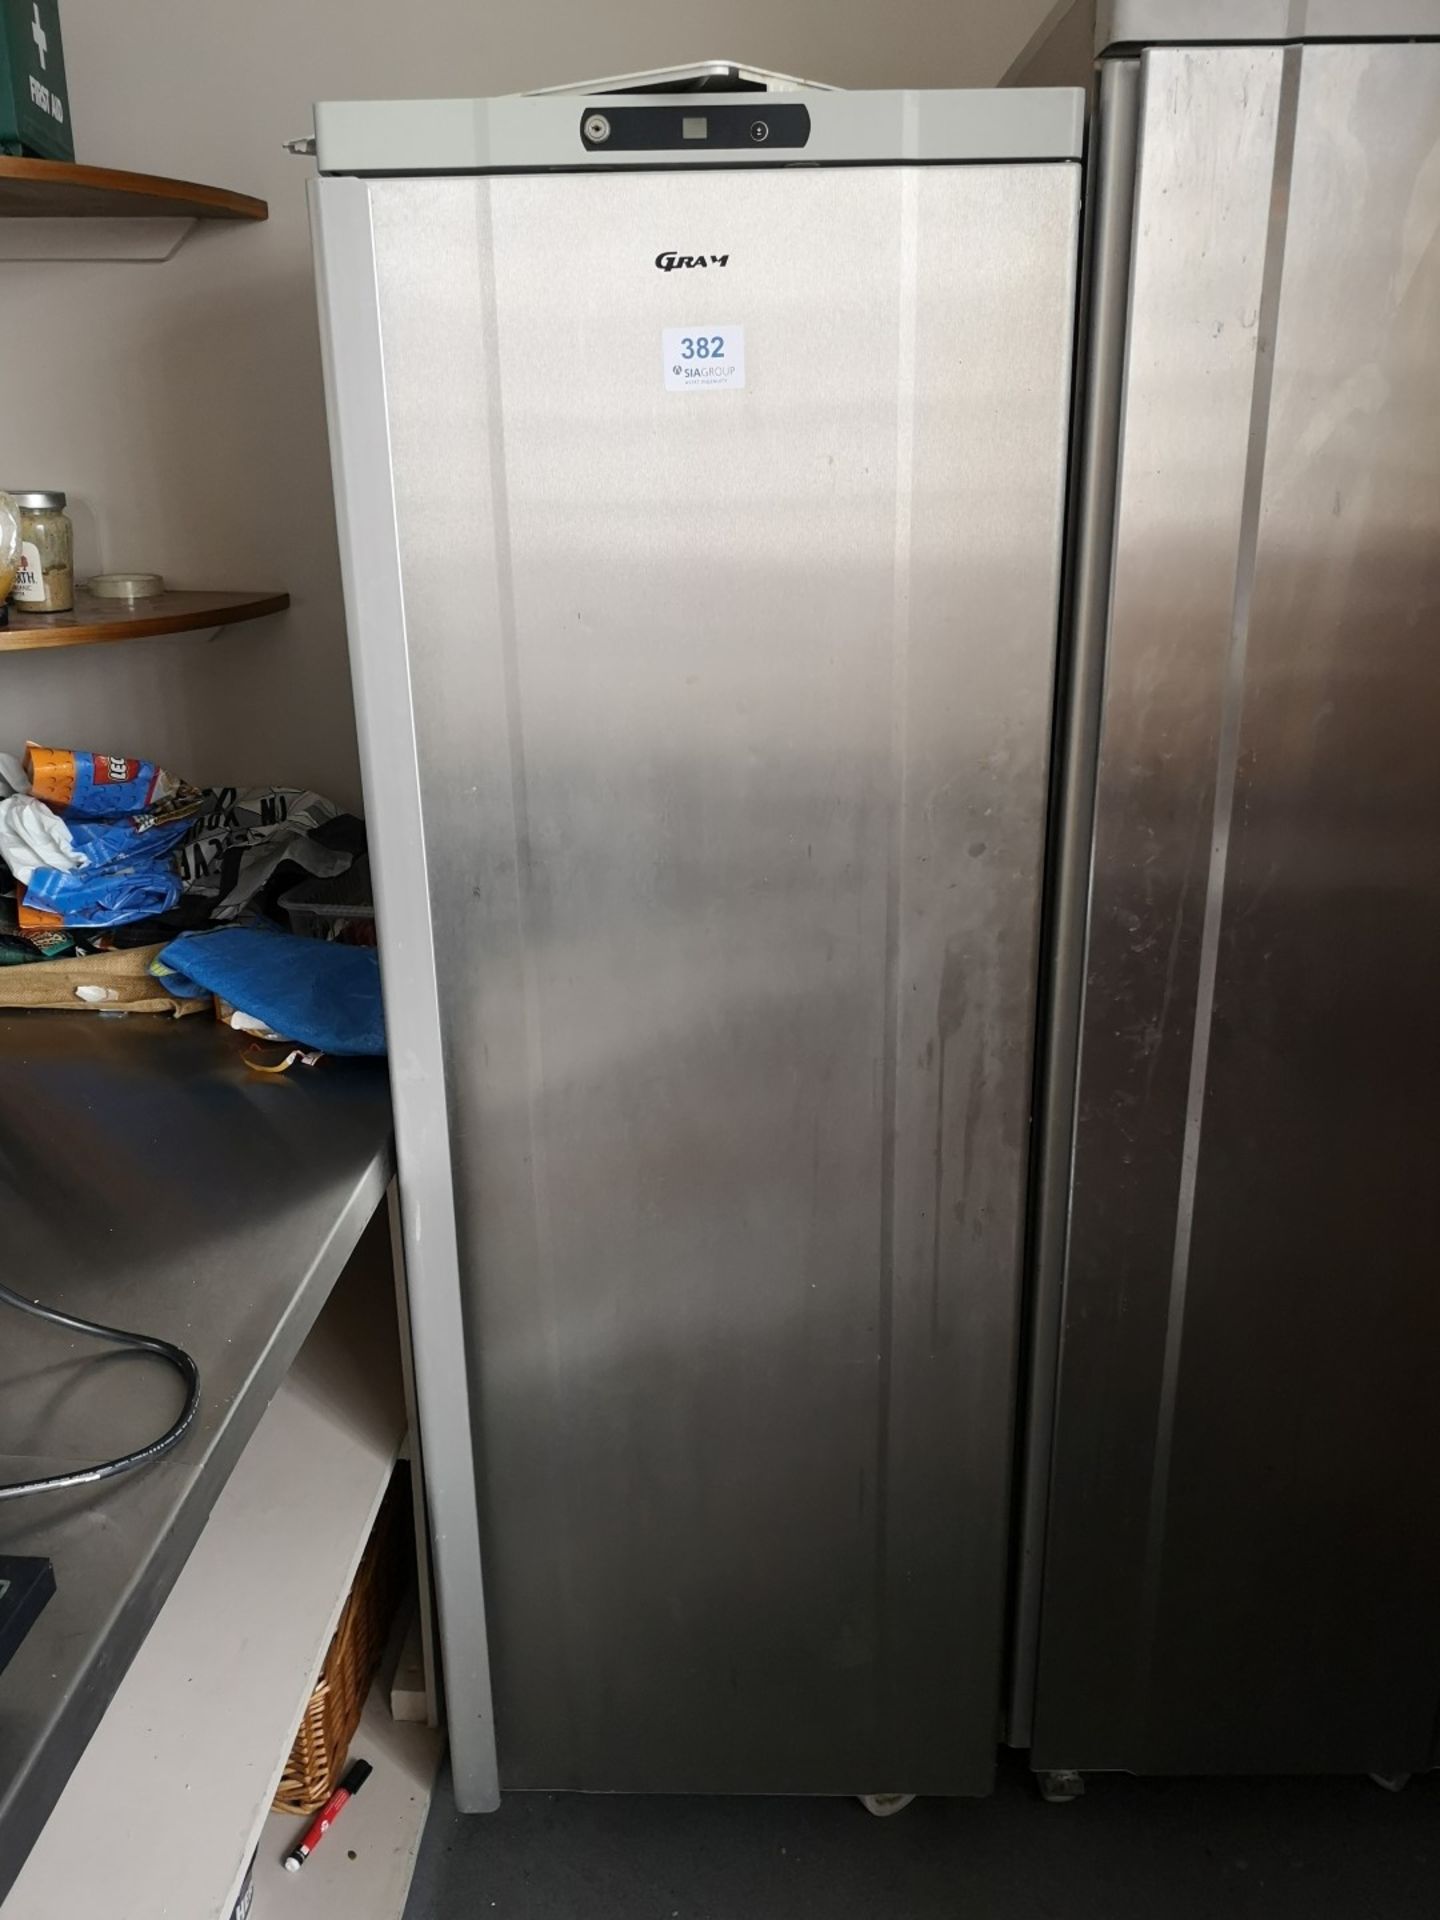 Gram Stainless Steel Single Door Freezer